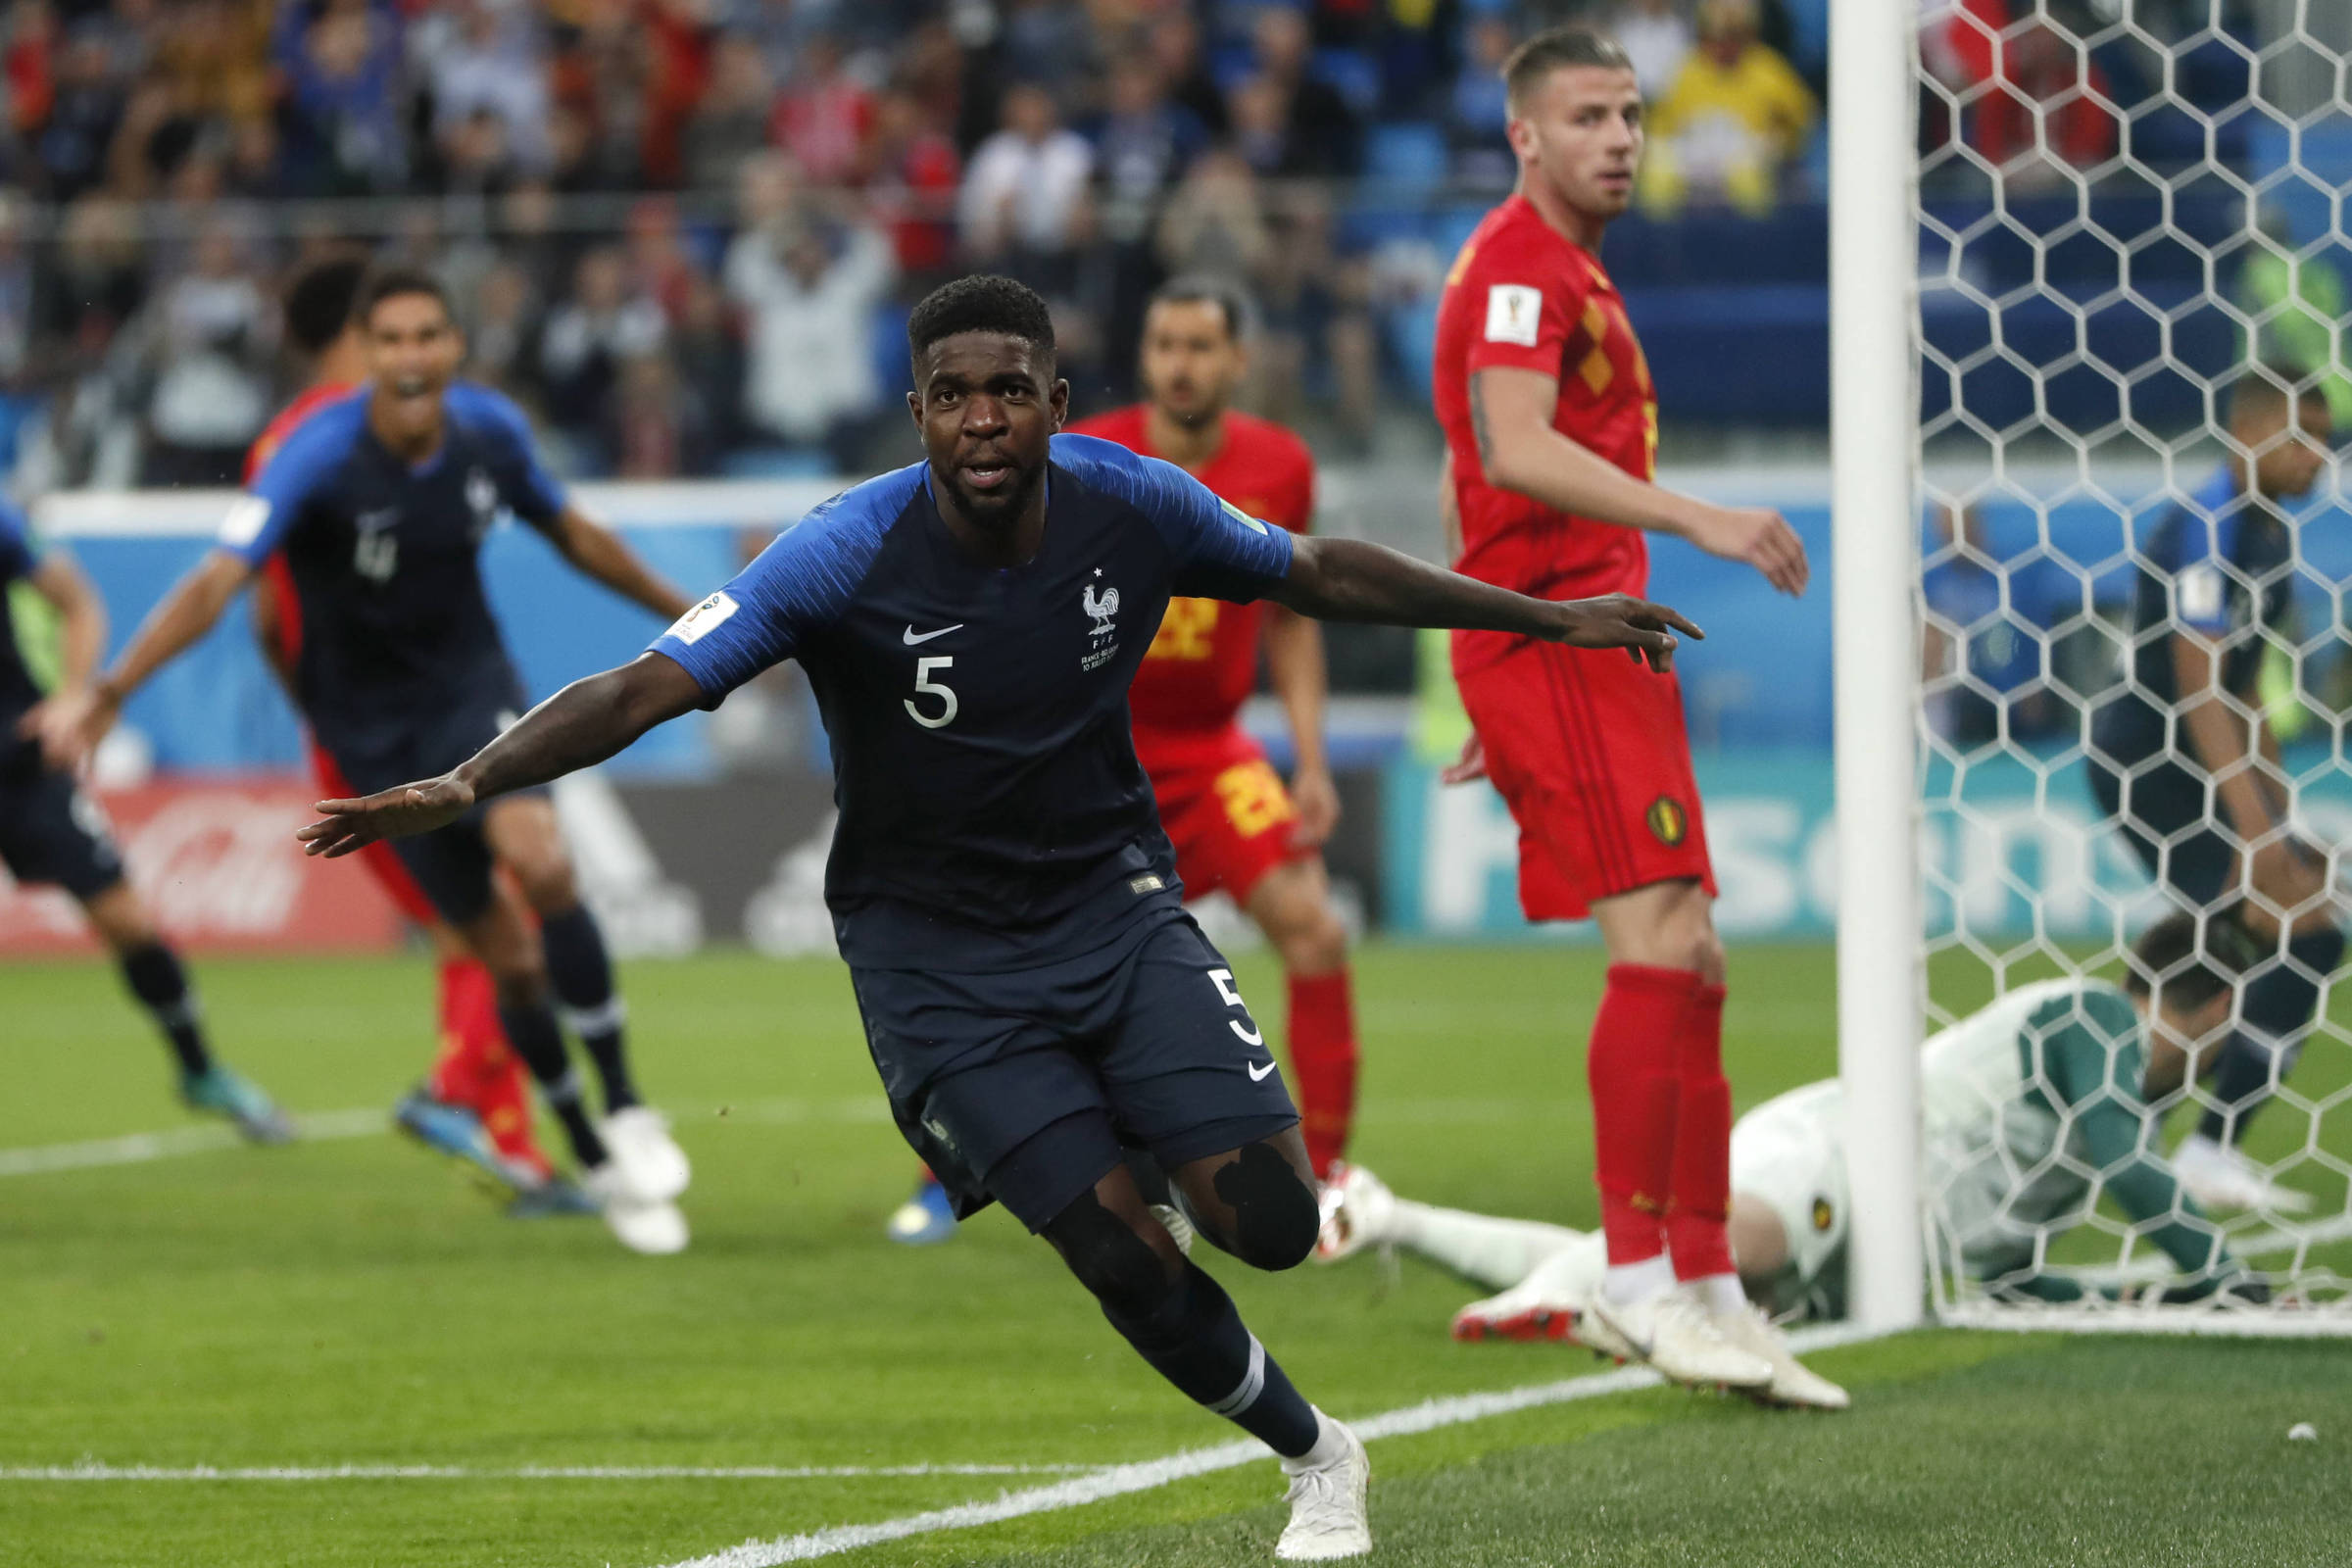 FRANÇA NA FINAL! França 1 x 0 Bélgica - melhores momentos (GLOBO HD 720P)  Copa do Mundo 2018 